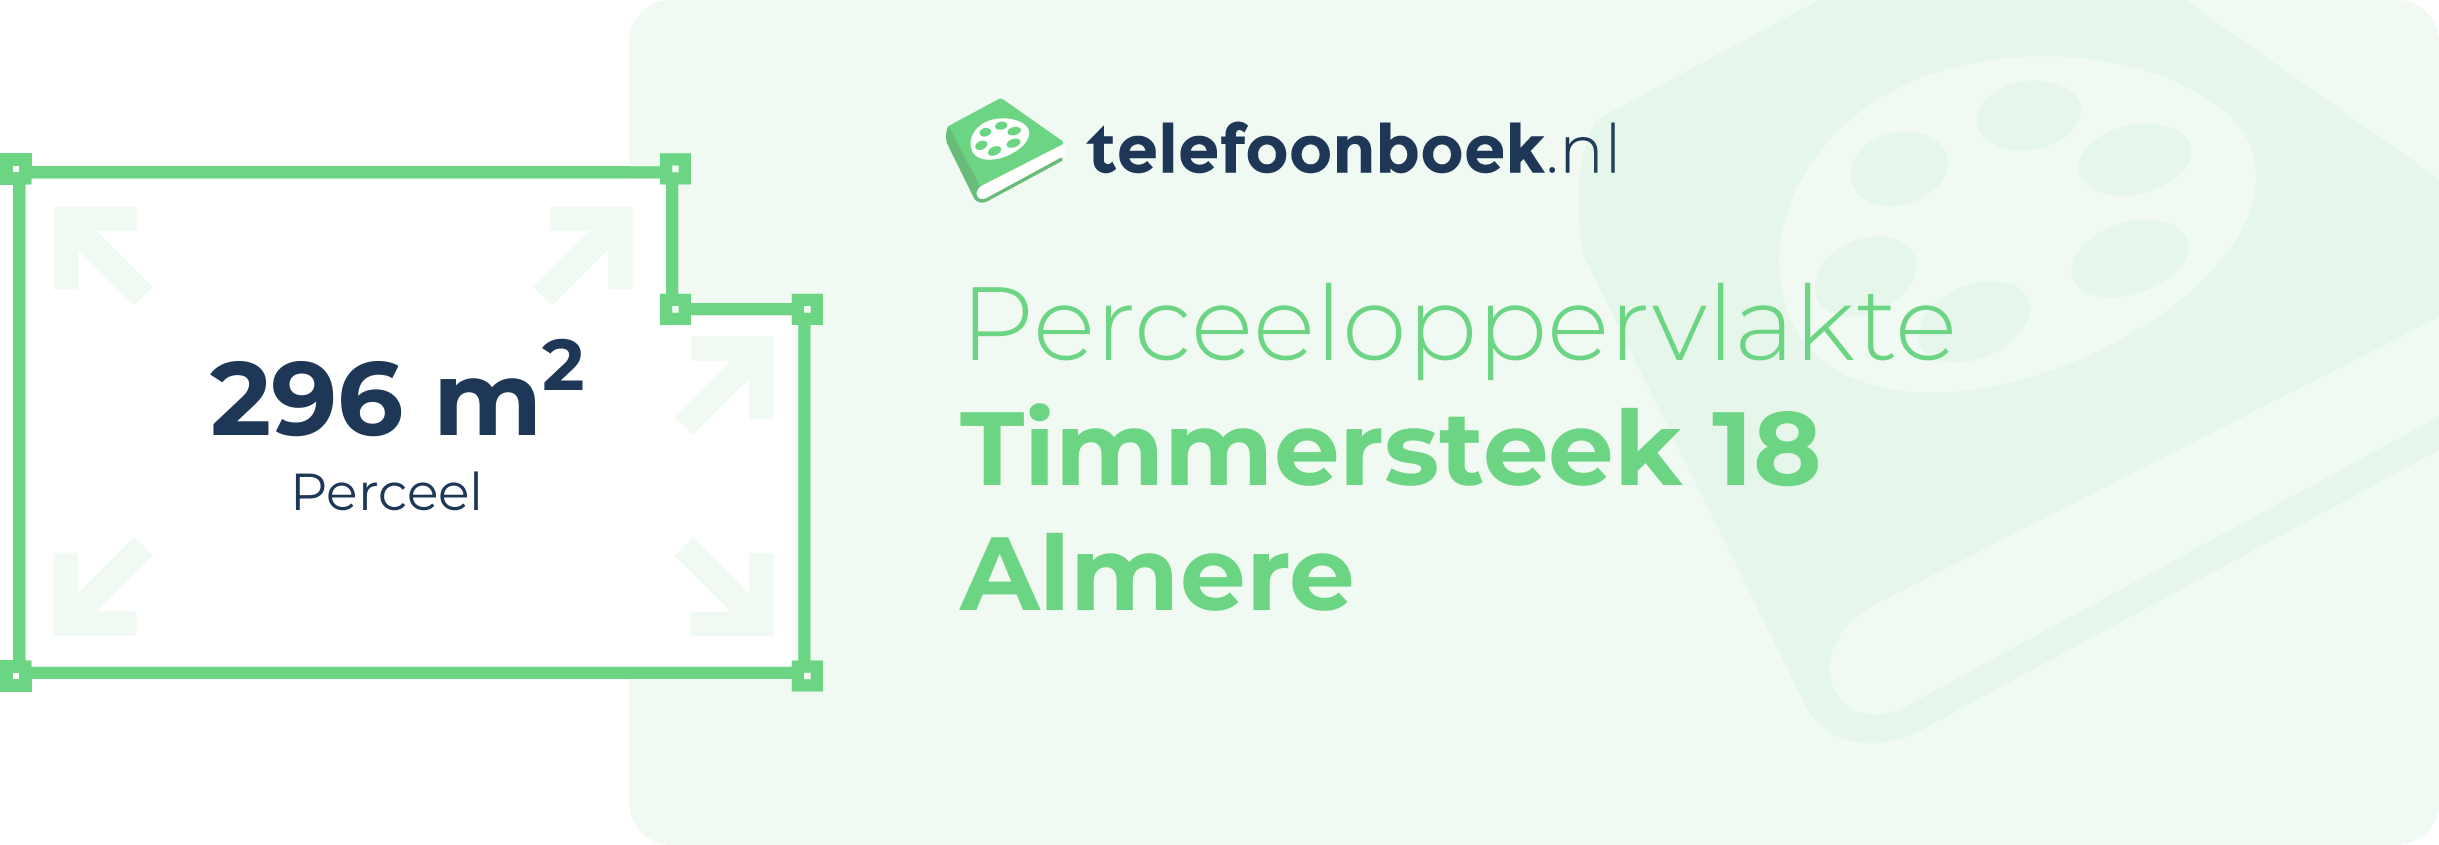 Perceeloppervlakte Timmersteek 18 Almere